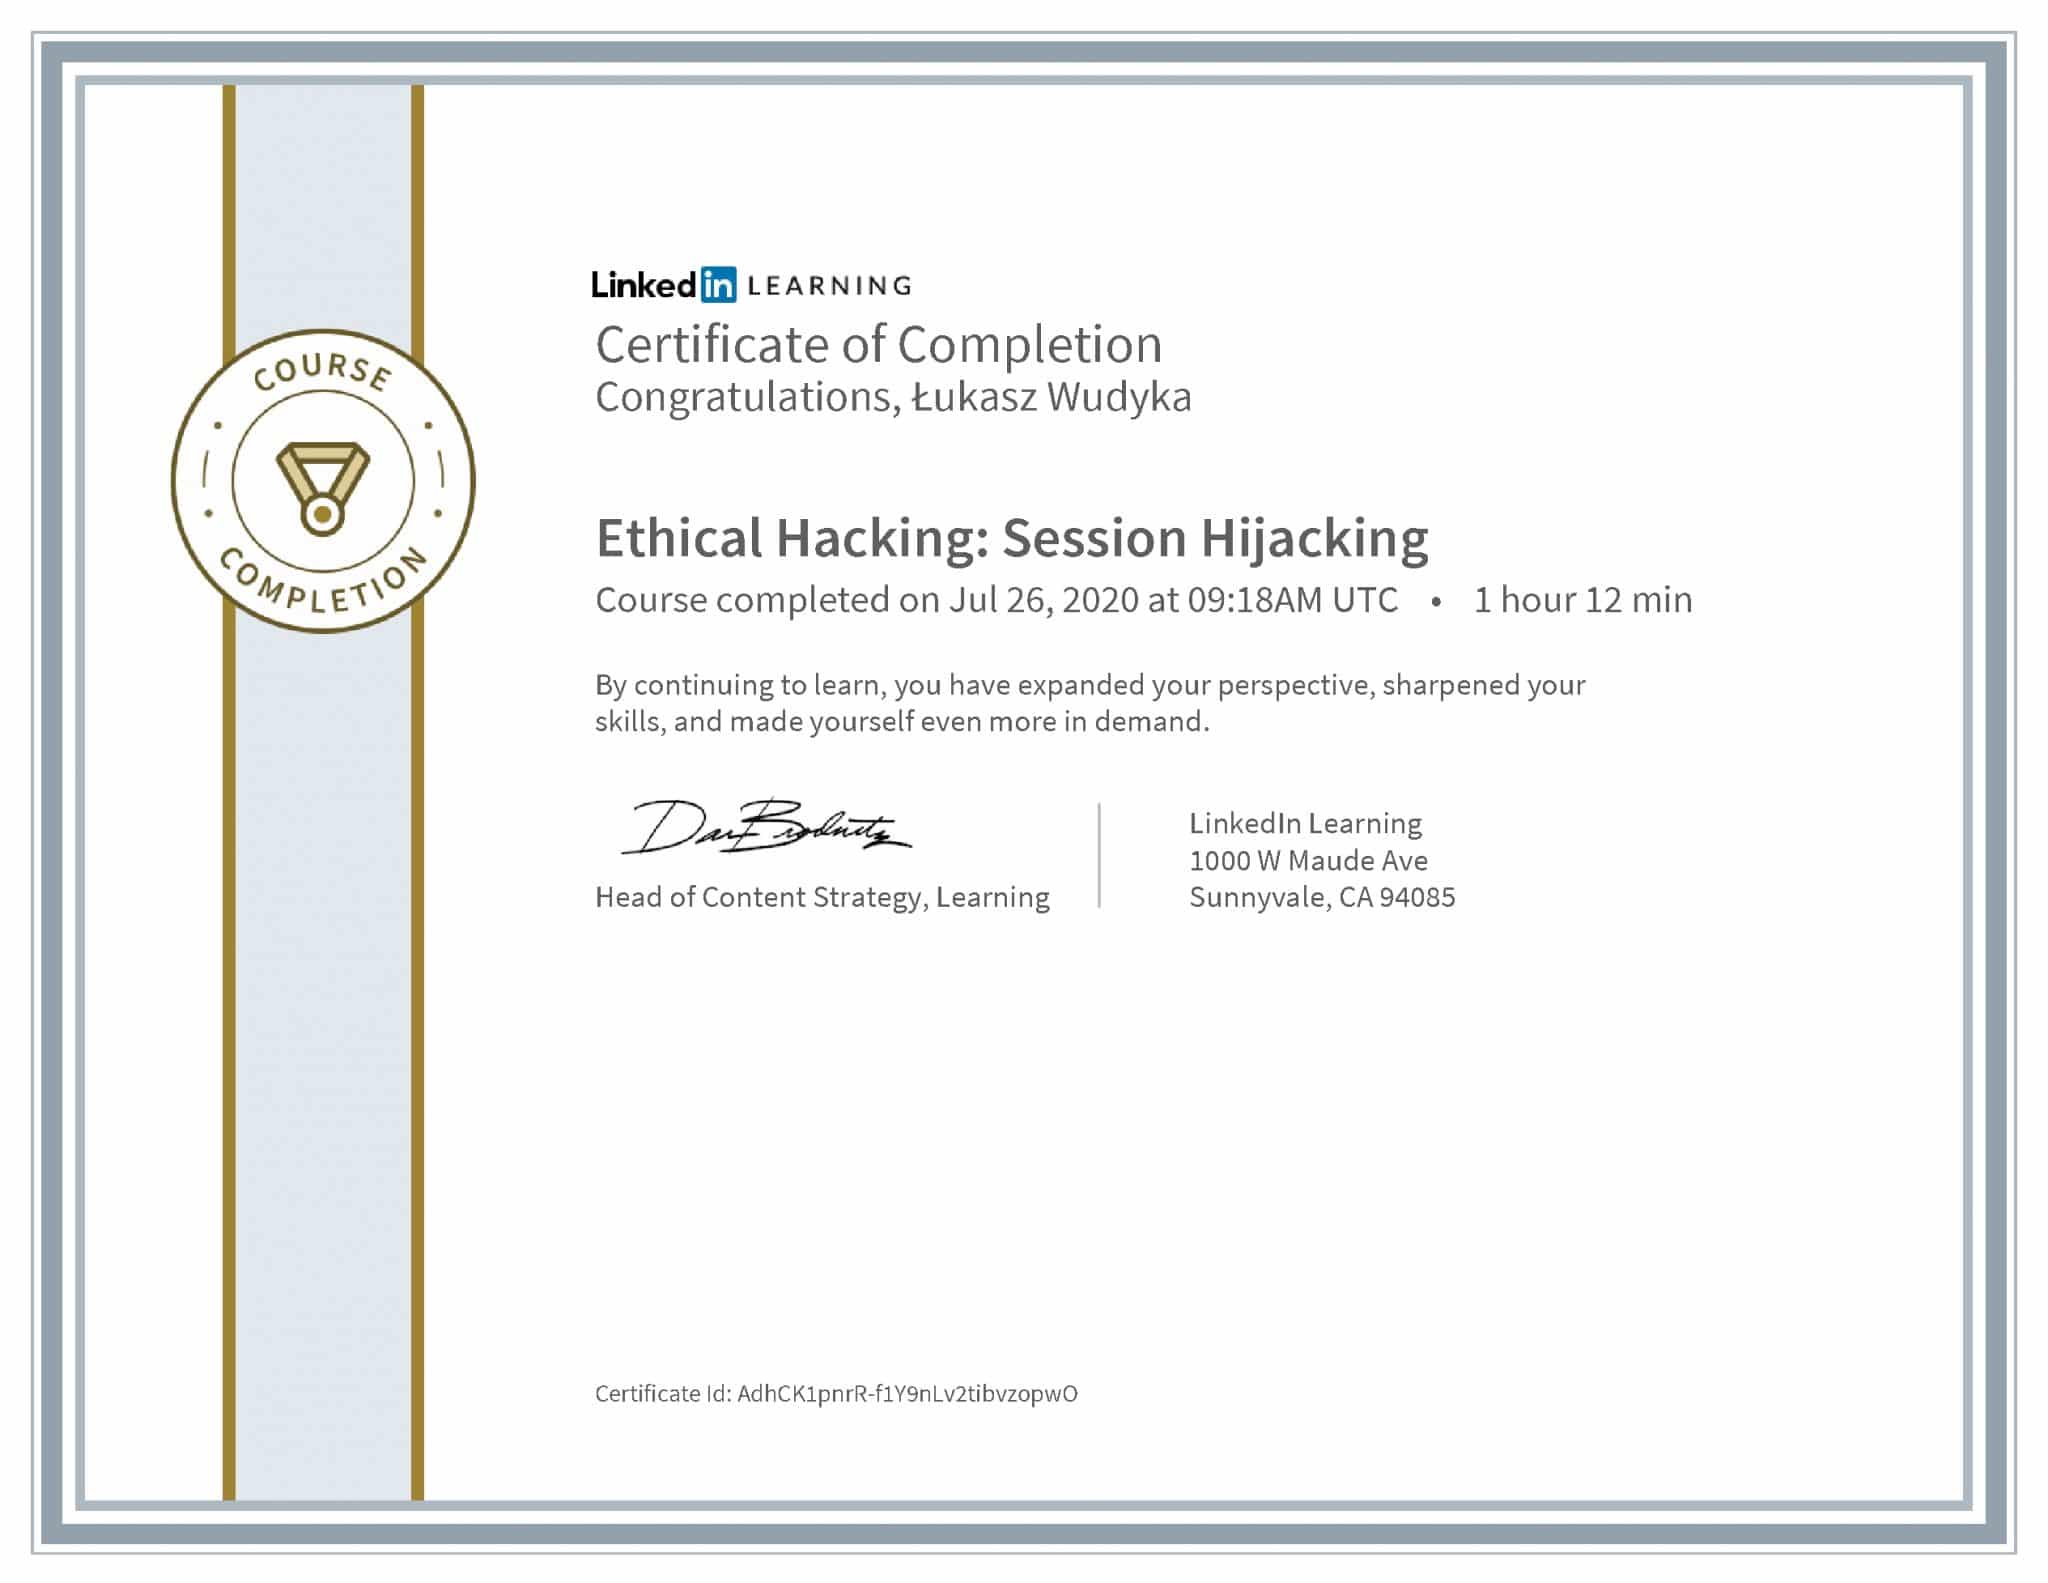 Łukasz Wudyka certyfikat LinkedIn Ethical Hacking: Session Hijacking